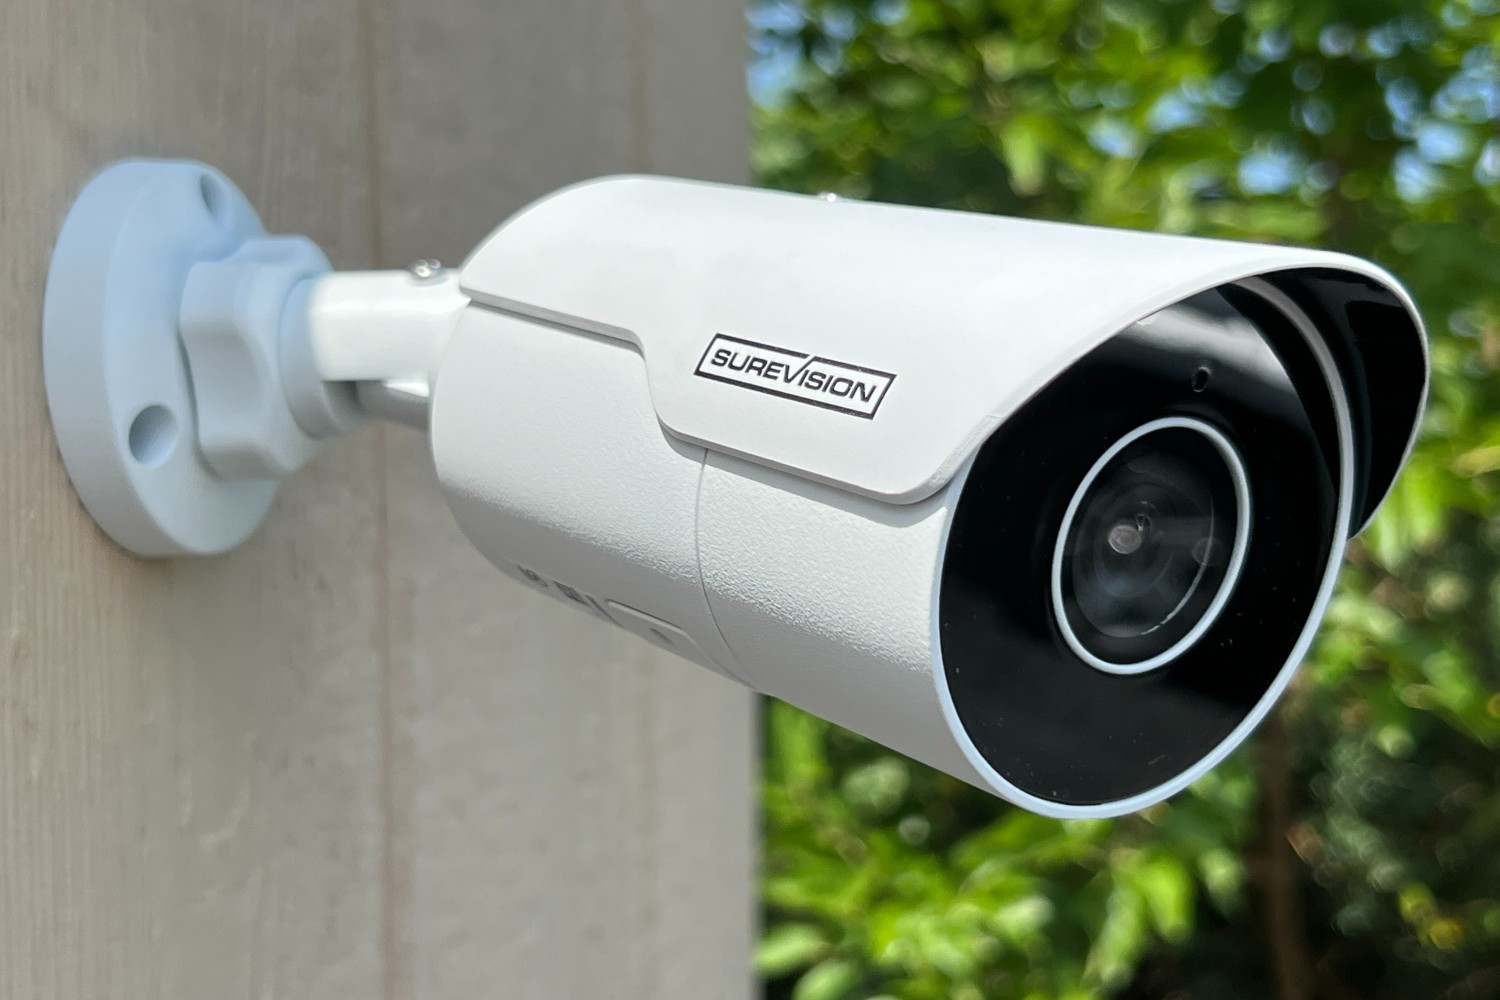  outdoor security camera